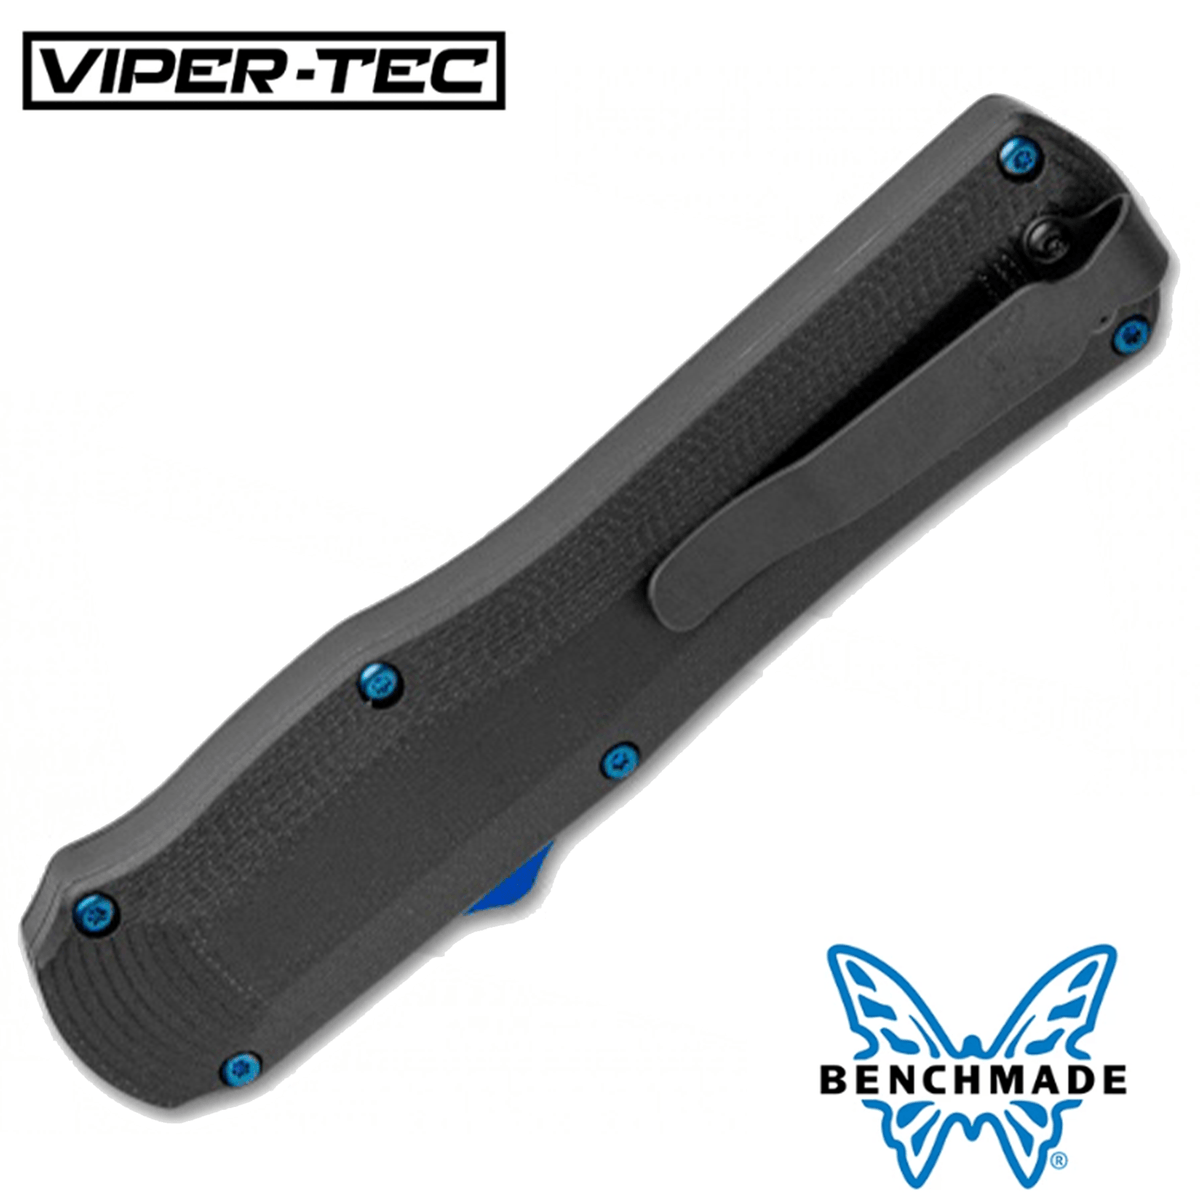 Benchmade Autocrat D/A OTF Automatic Knife Black G-10 - Viper Tec